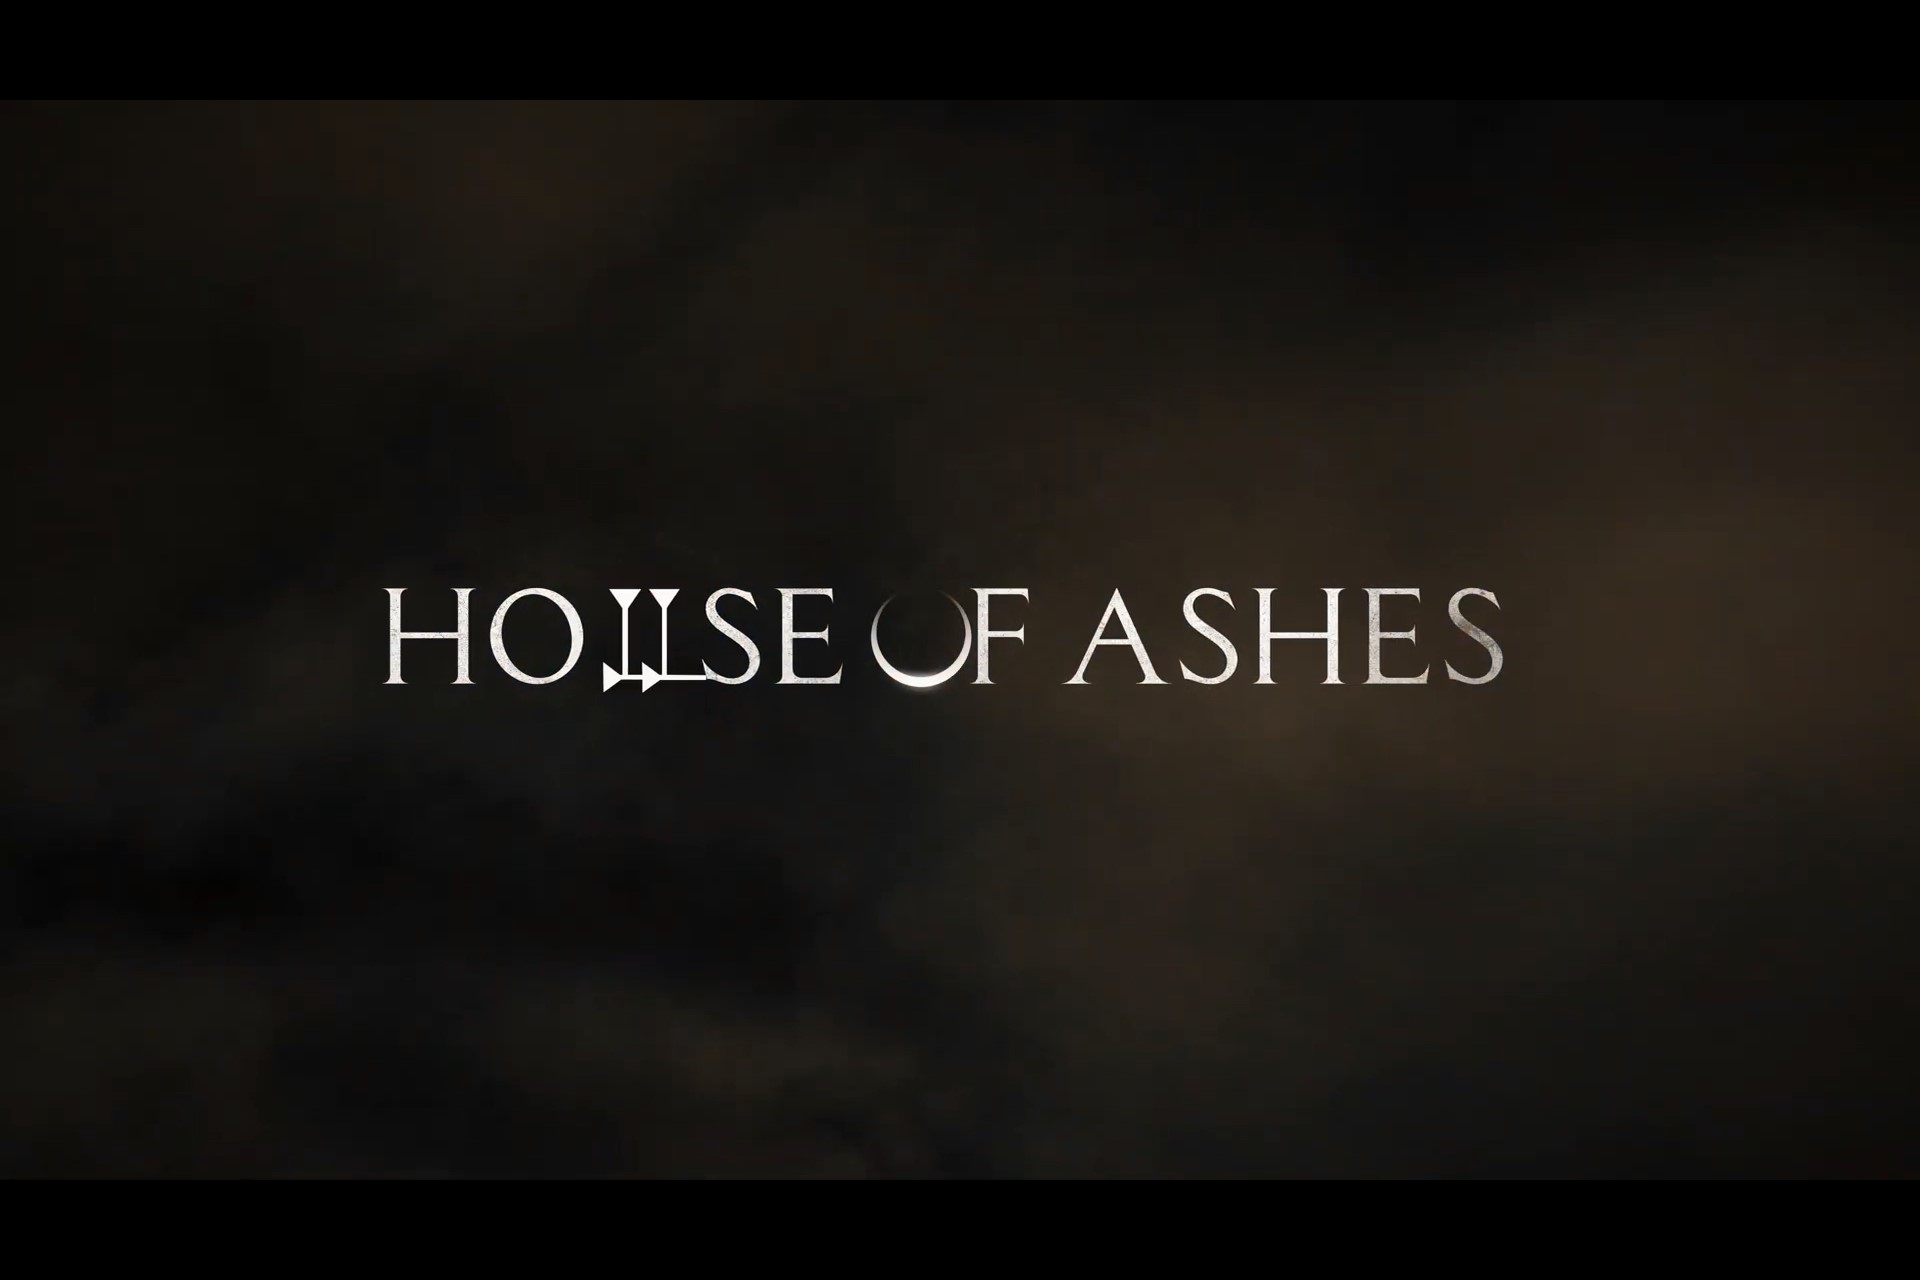 بازی The Dark Pictures Anthology: House of Ashes با یک تریلر معرفی شد